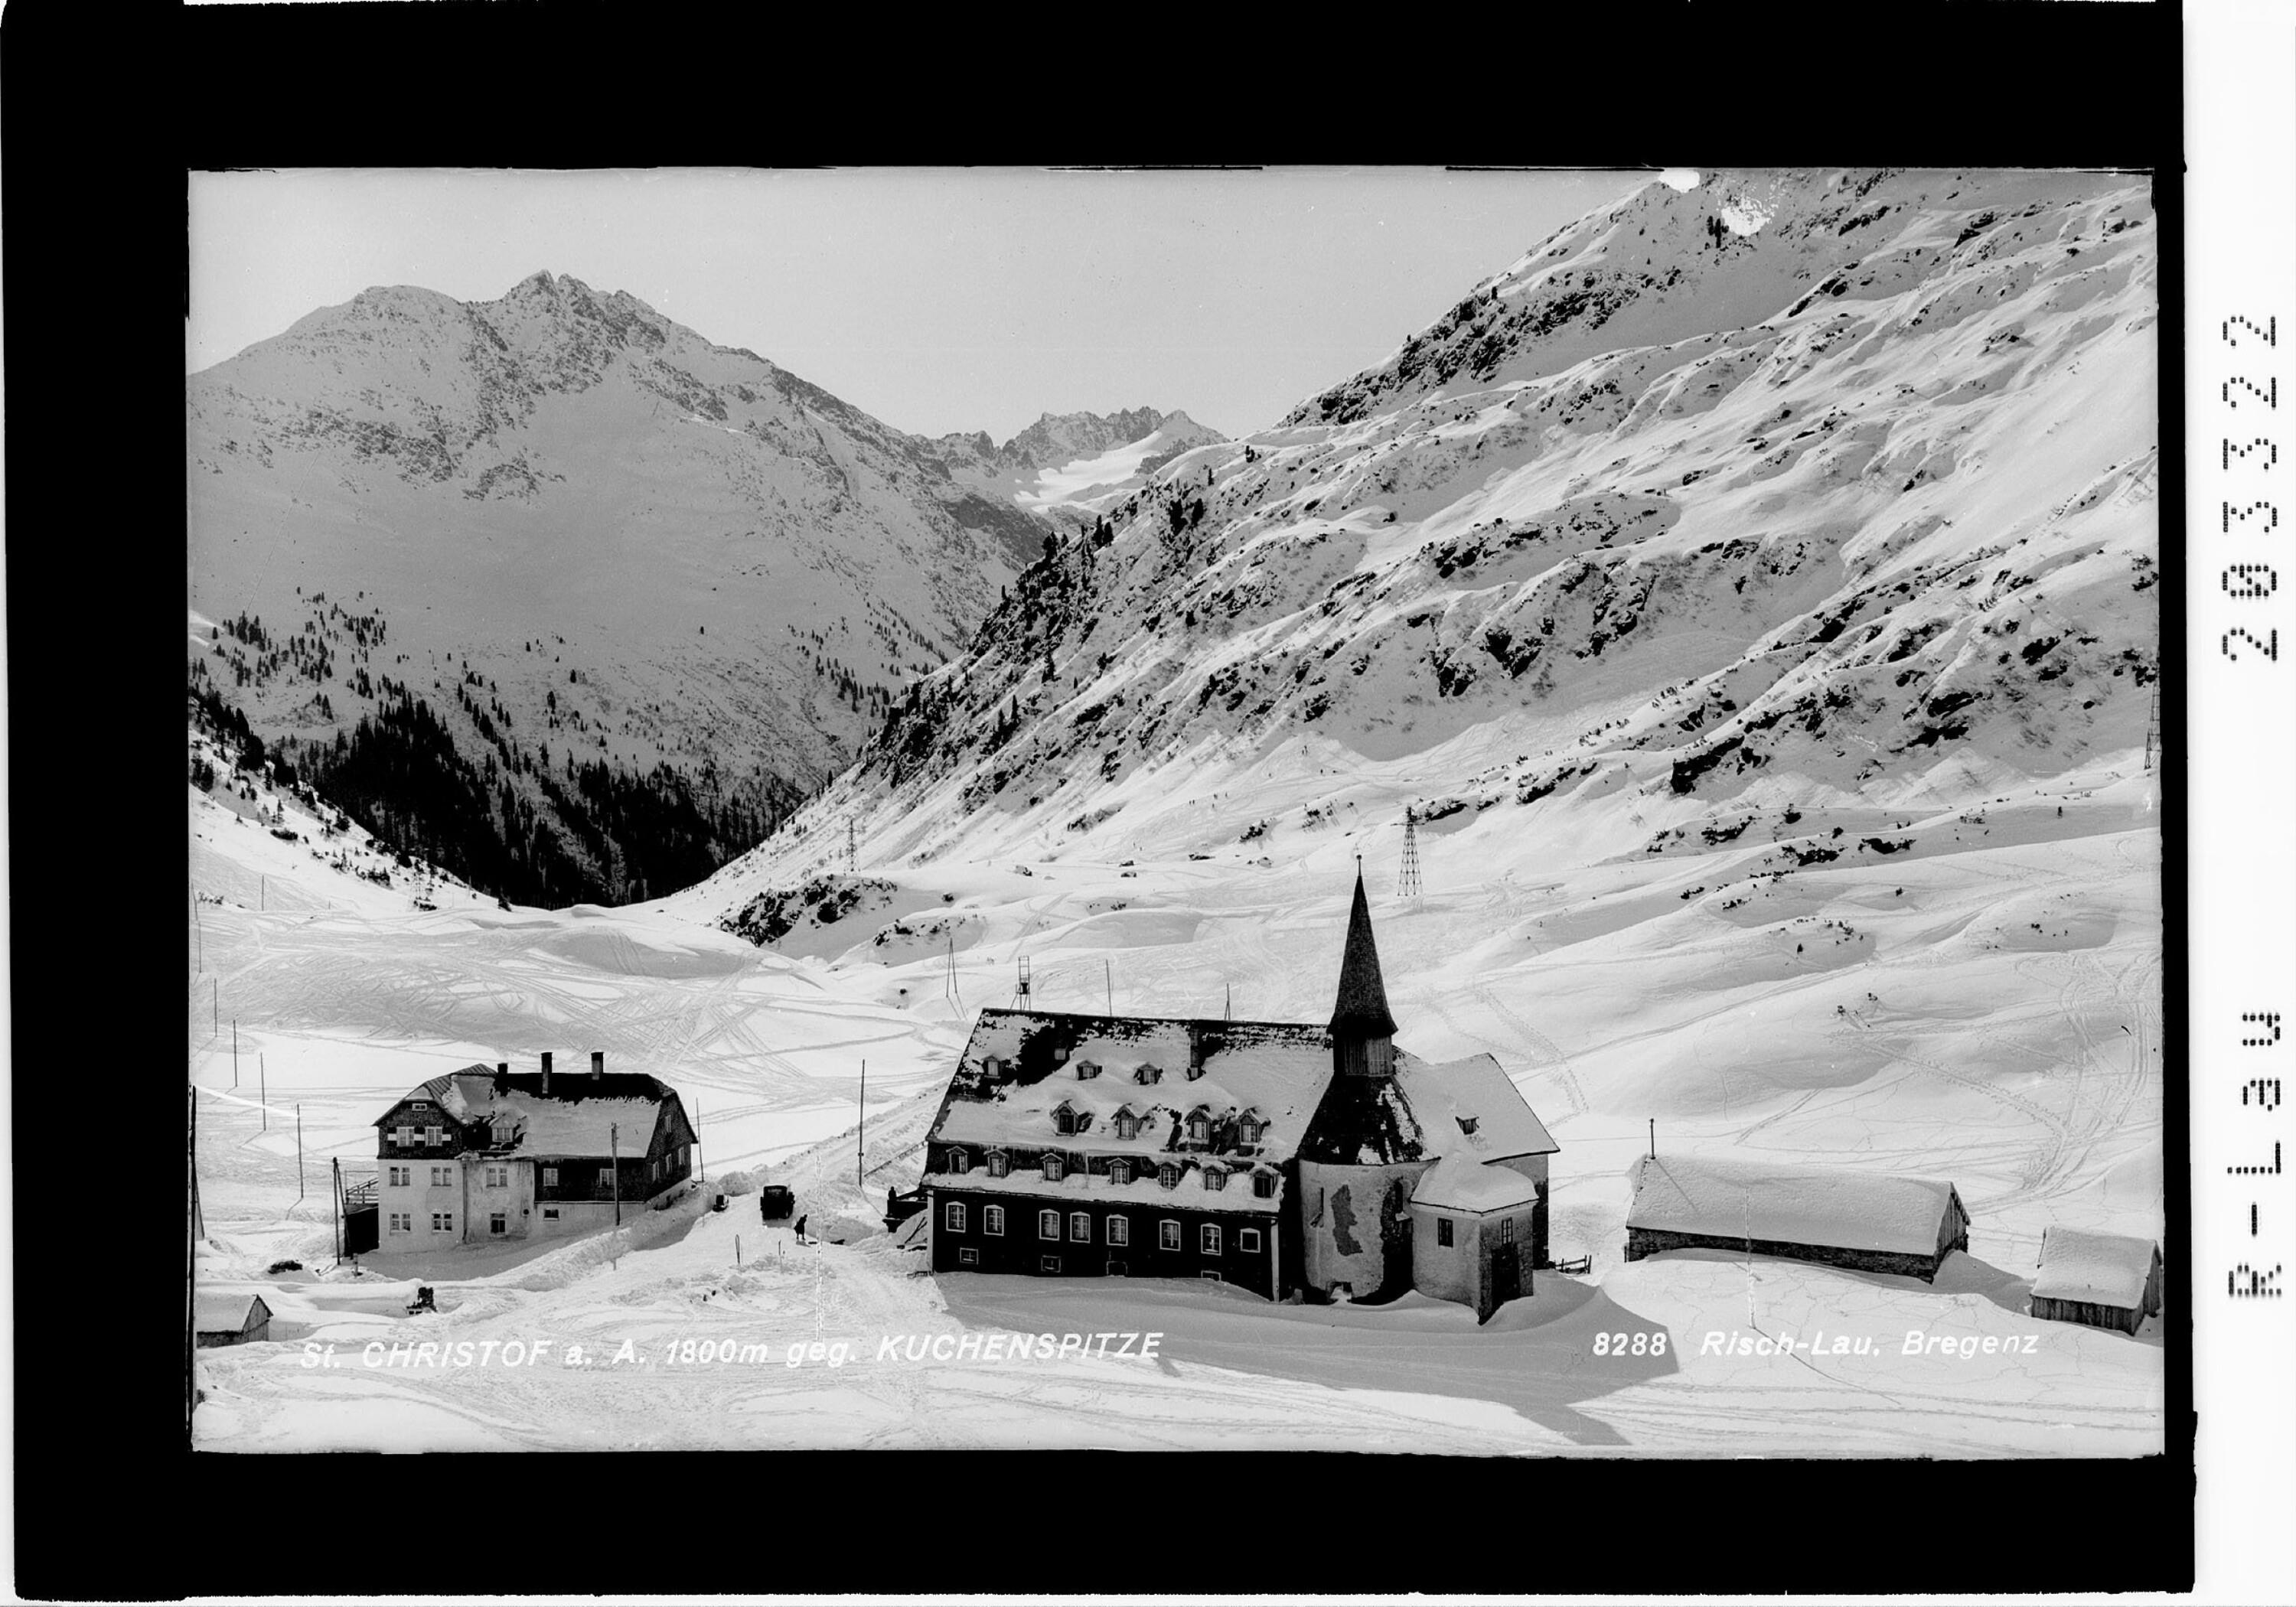 St.Christoph am Arlberg 1800 m gegen Kuchenspitze></div>


    <hr>
    <div class=